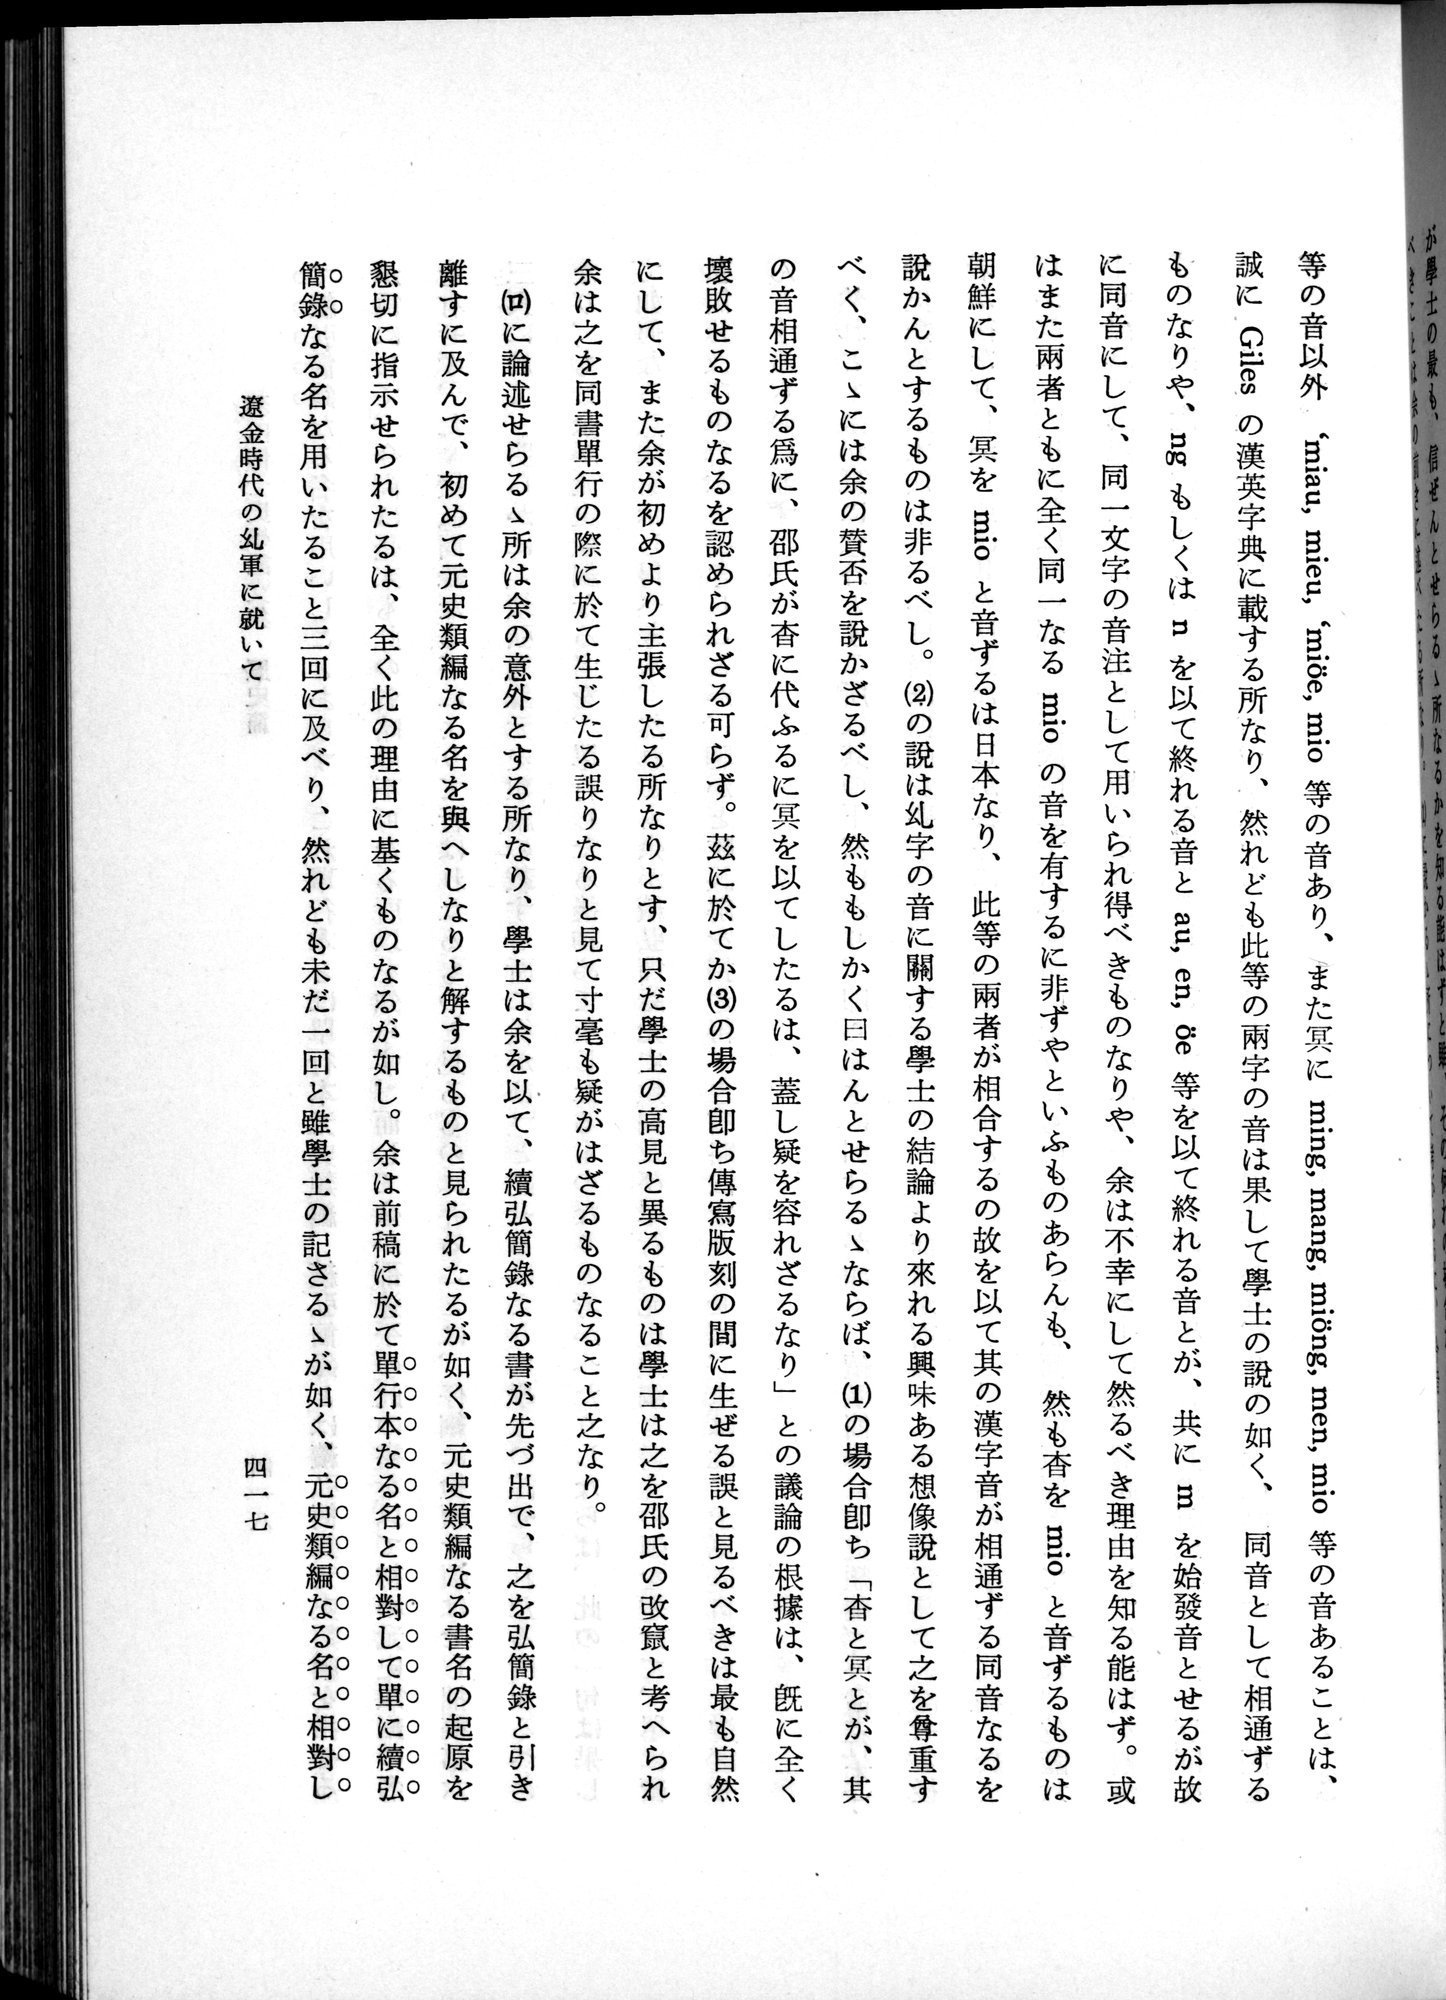 羽田博士史学論文集 : vol.1 / Page 455 (Grayscale High Resolution Image)